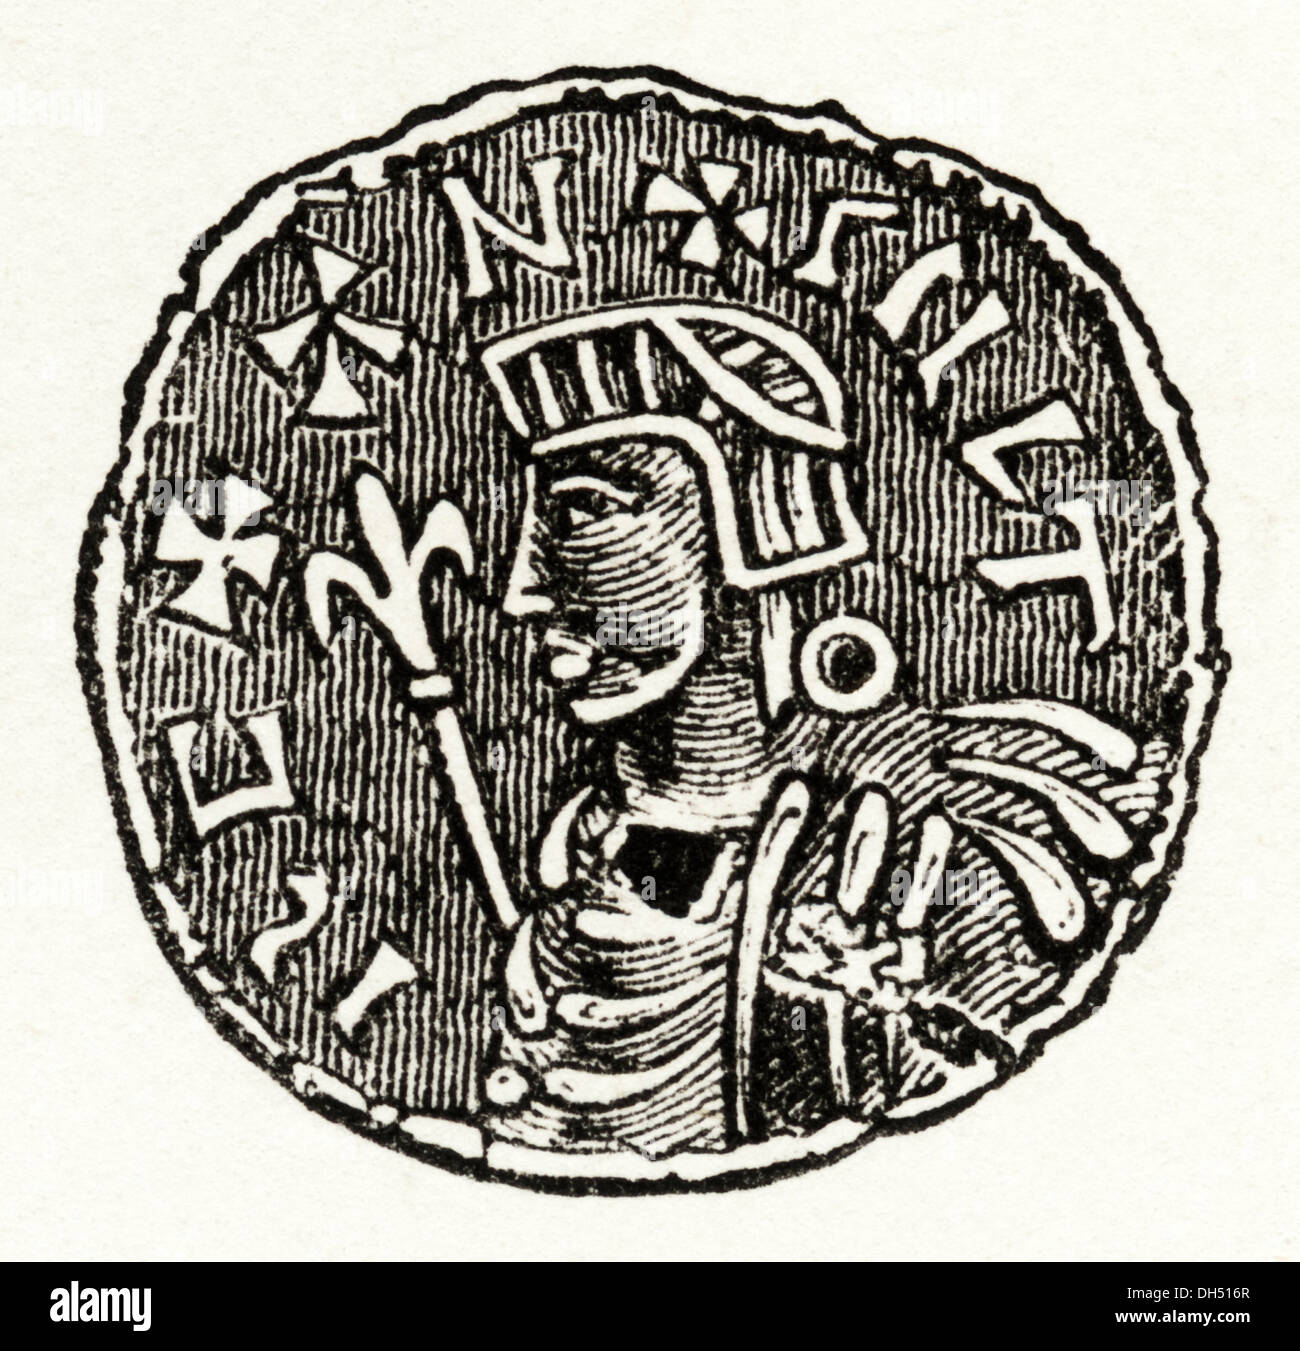 Anglo Saxon England. Silbermünze von König Canute in Anglo-Saxon England. Viktorianische Holzschnitt ca. 1845. Stockfoto